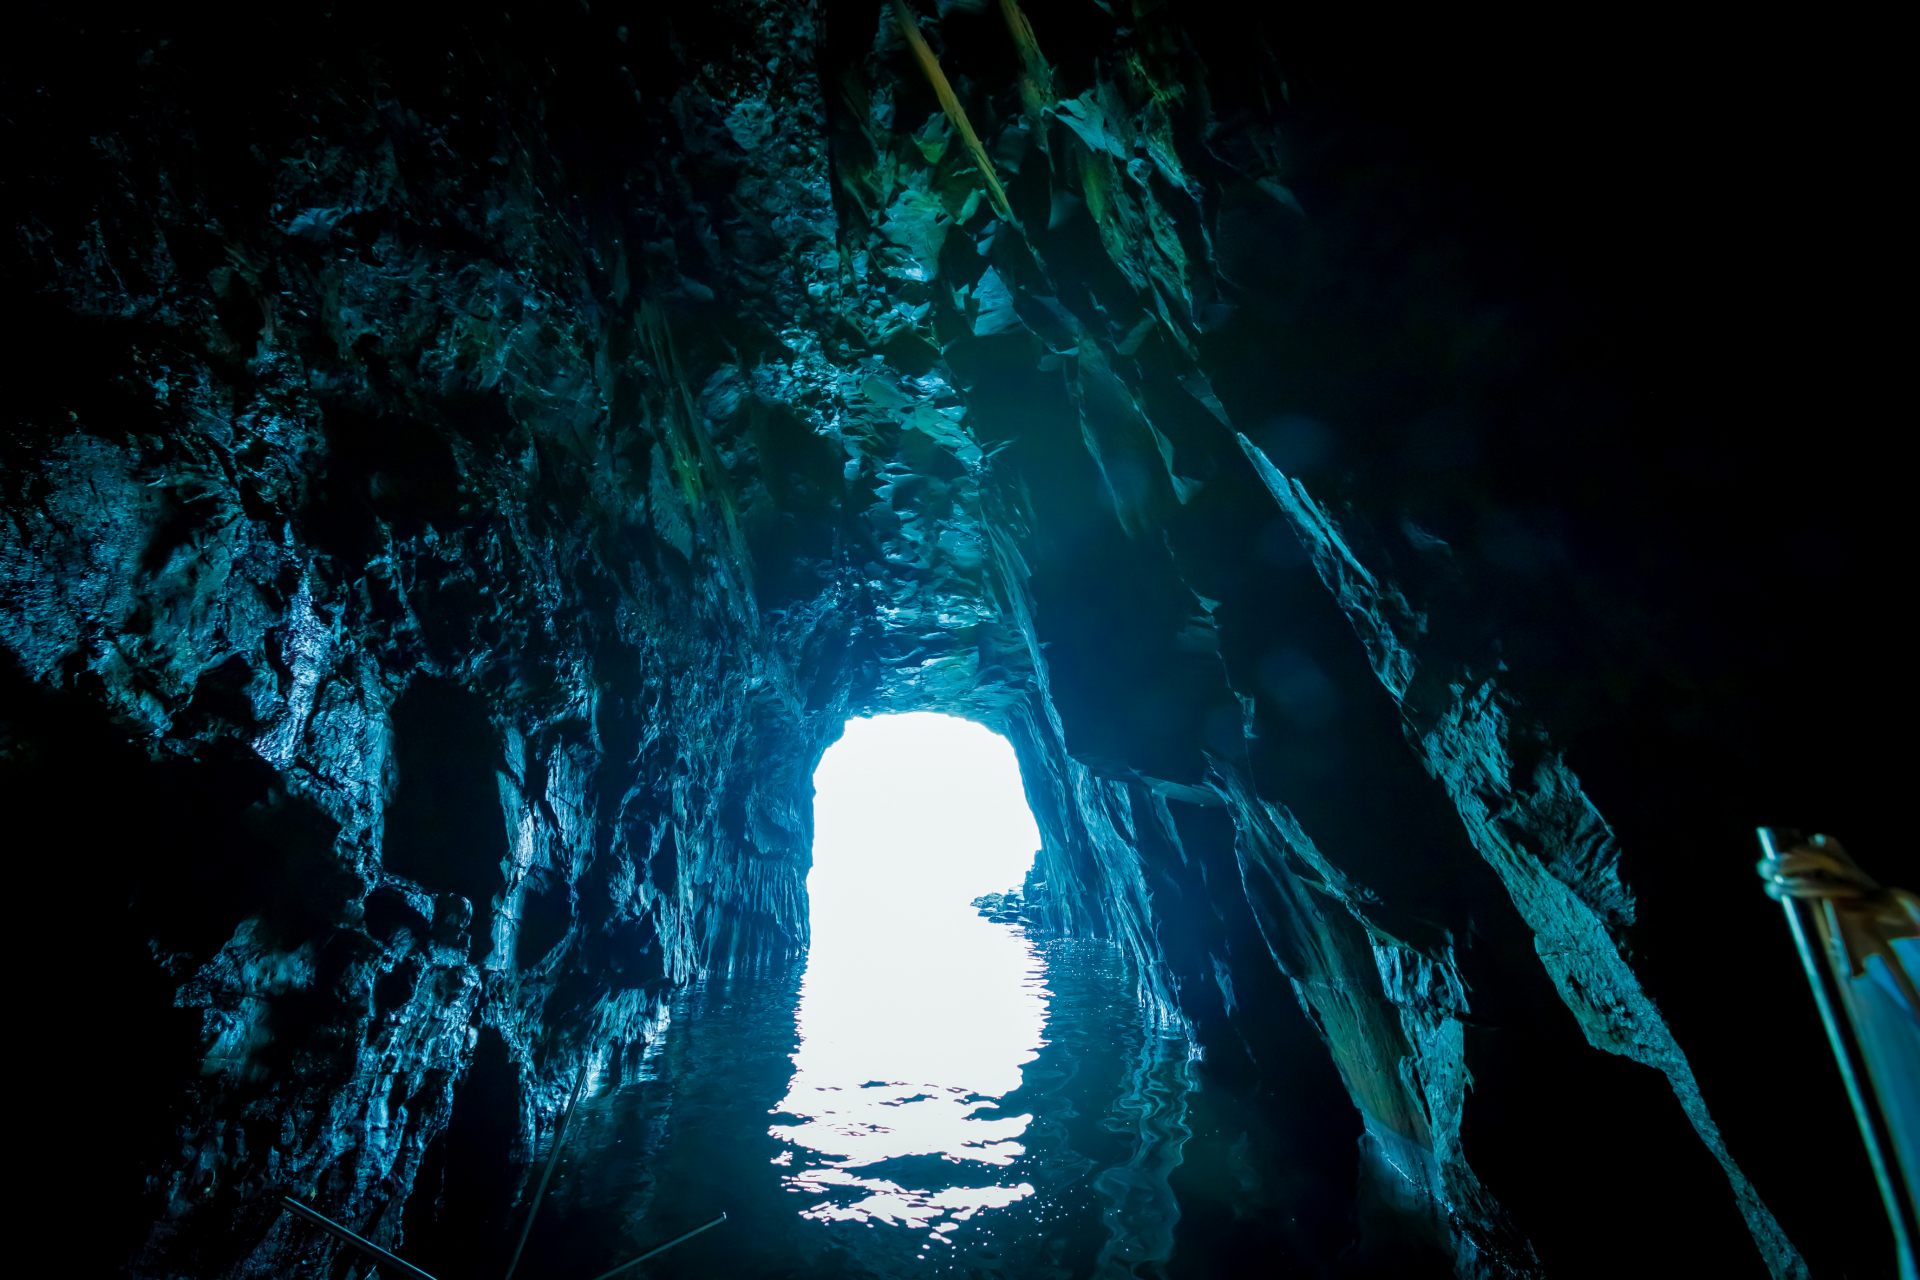 即使是小船，洞口也很难通过。但是，一旦您进入洞穴，就会被壮丽的景色包围。